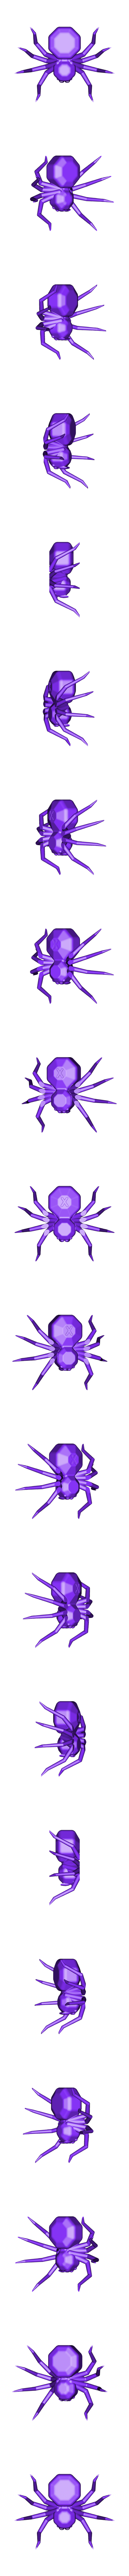 TortureSpider.stl Télécharger fichier STL gratuit Torture Spider, test de torture d'imprimante 3D - surplombs - refroidissement - rétraction • Modèle imprimable en 3D, printingotb